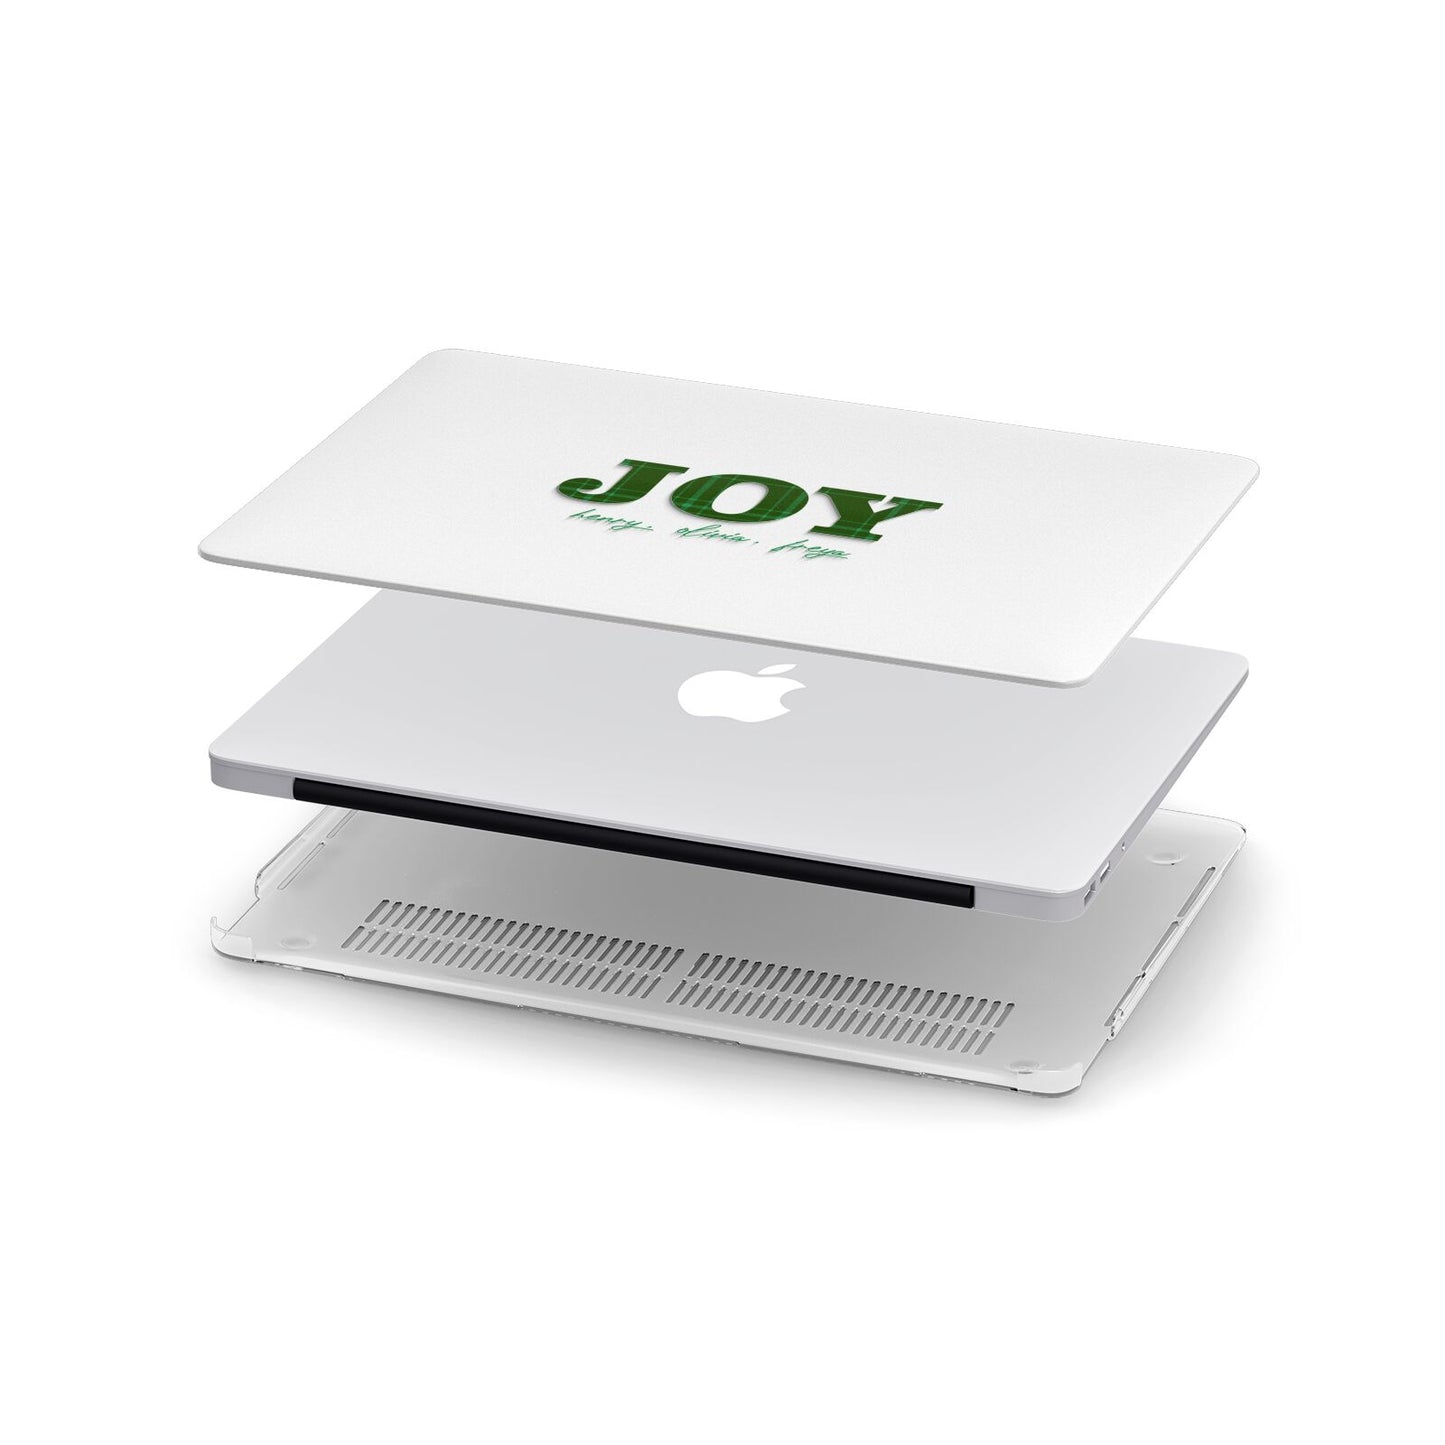 Personalised Joy Christmas Apple MacBook Case in Detail